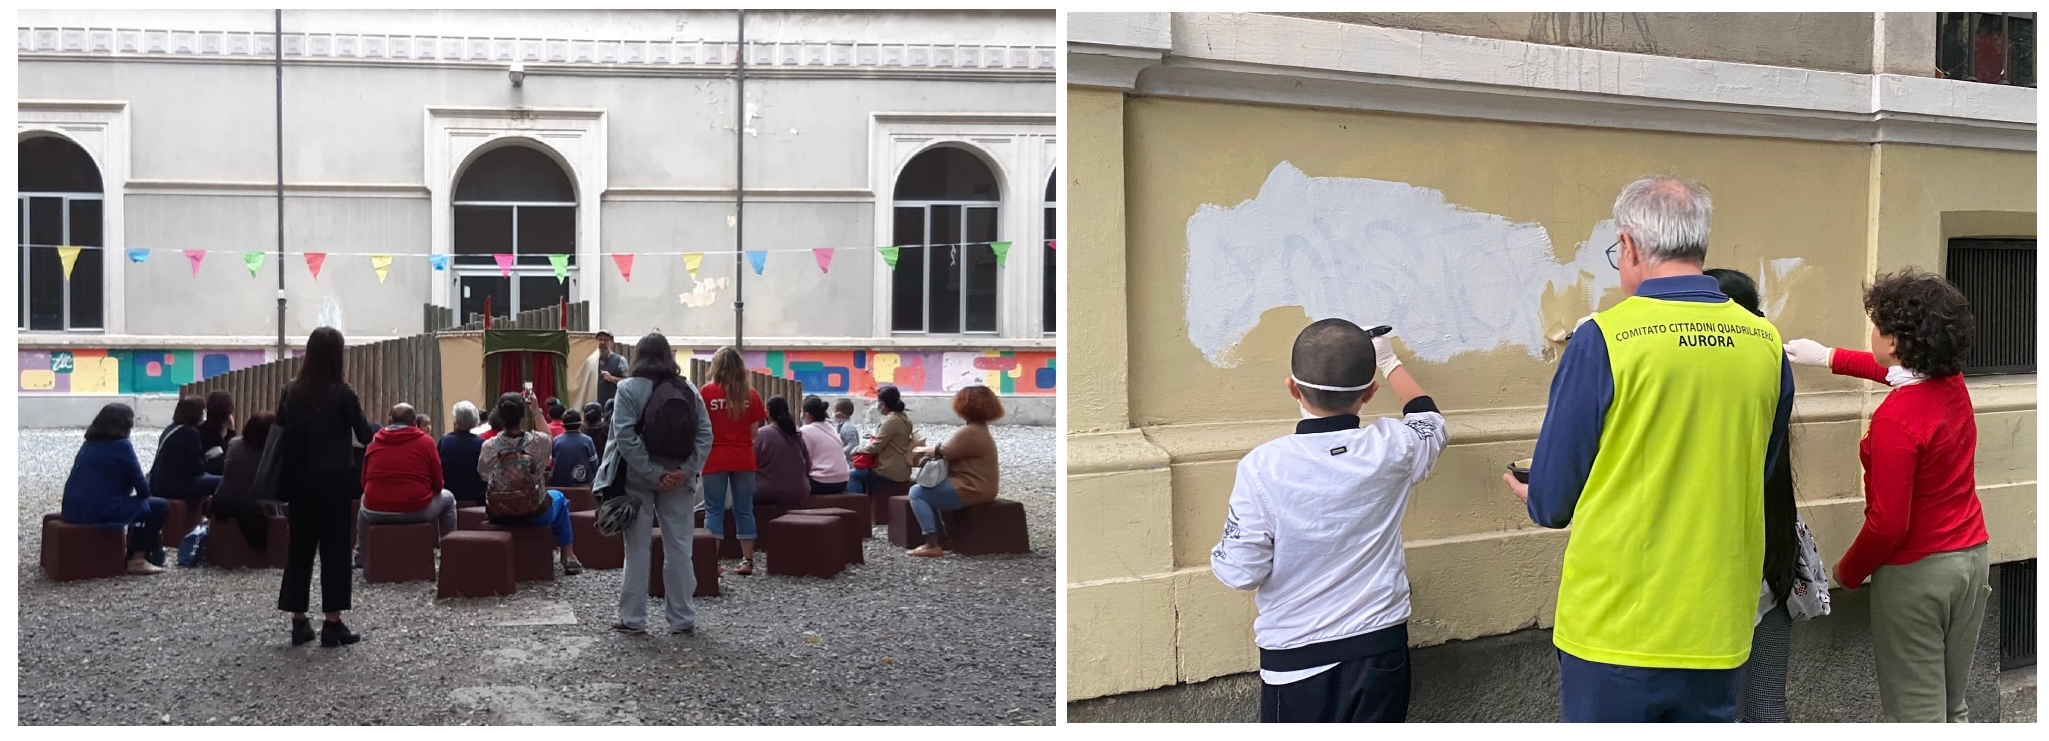 Lo spettacolo di burattini e la pittura dei muri della scuola - 25 Settembre